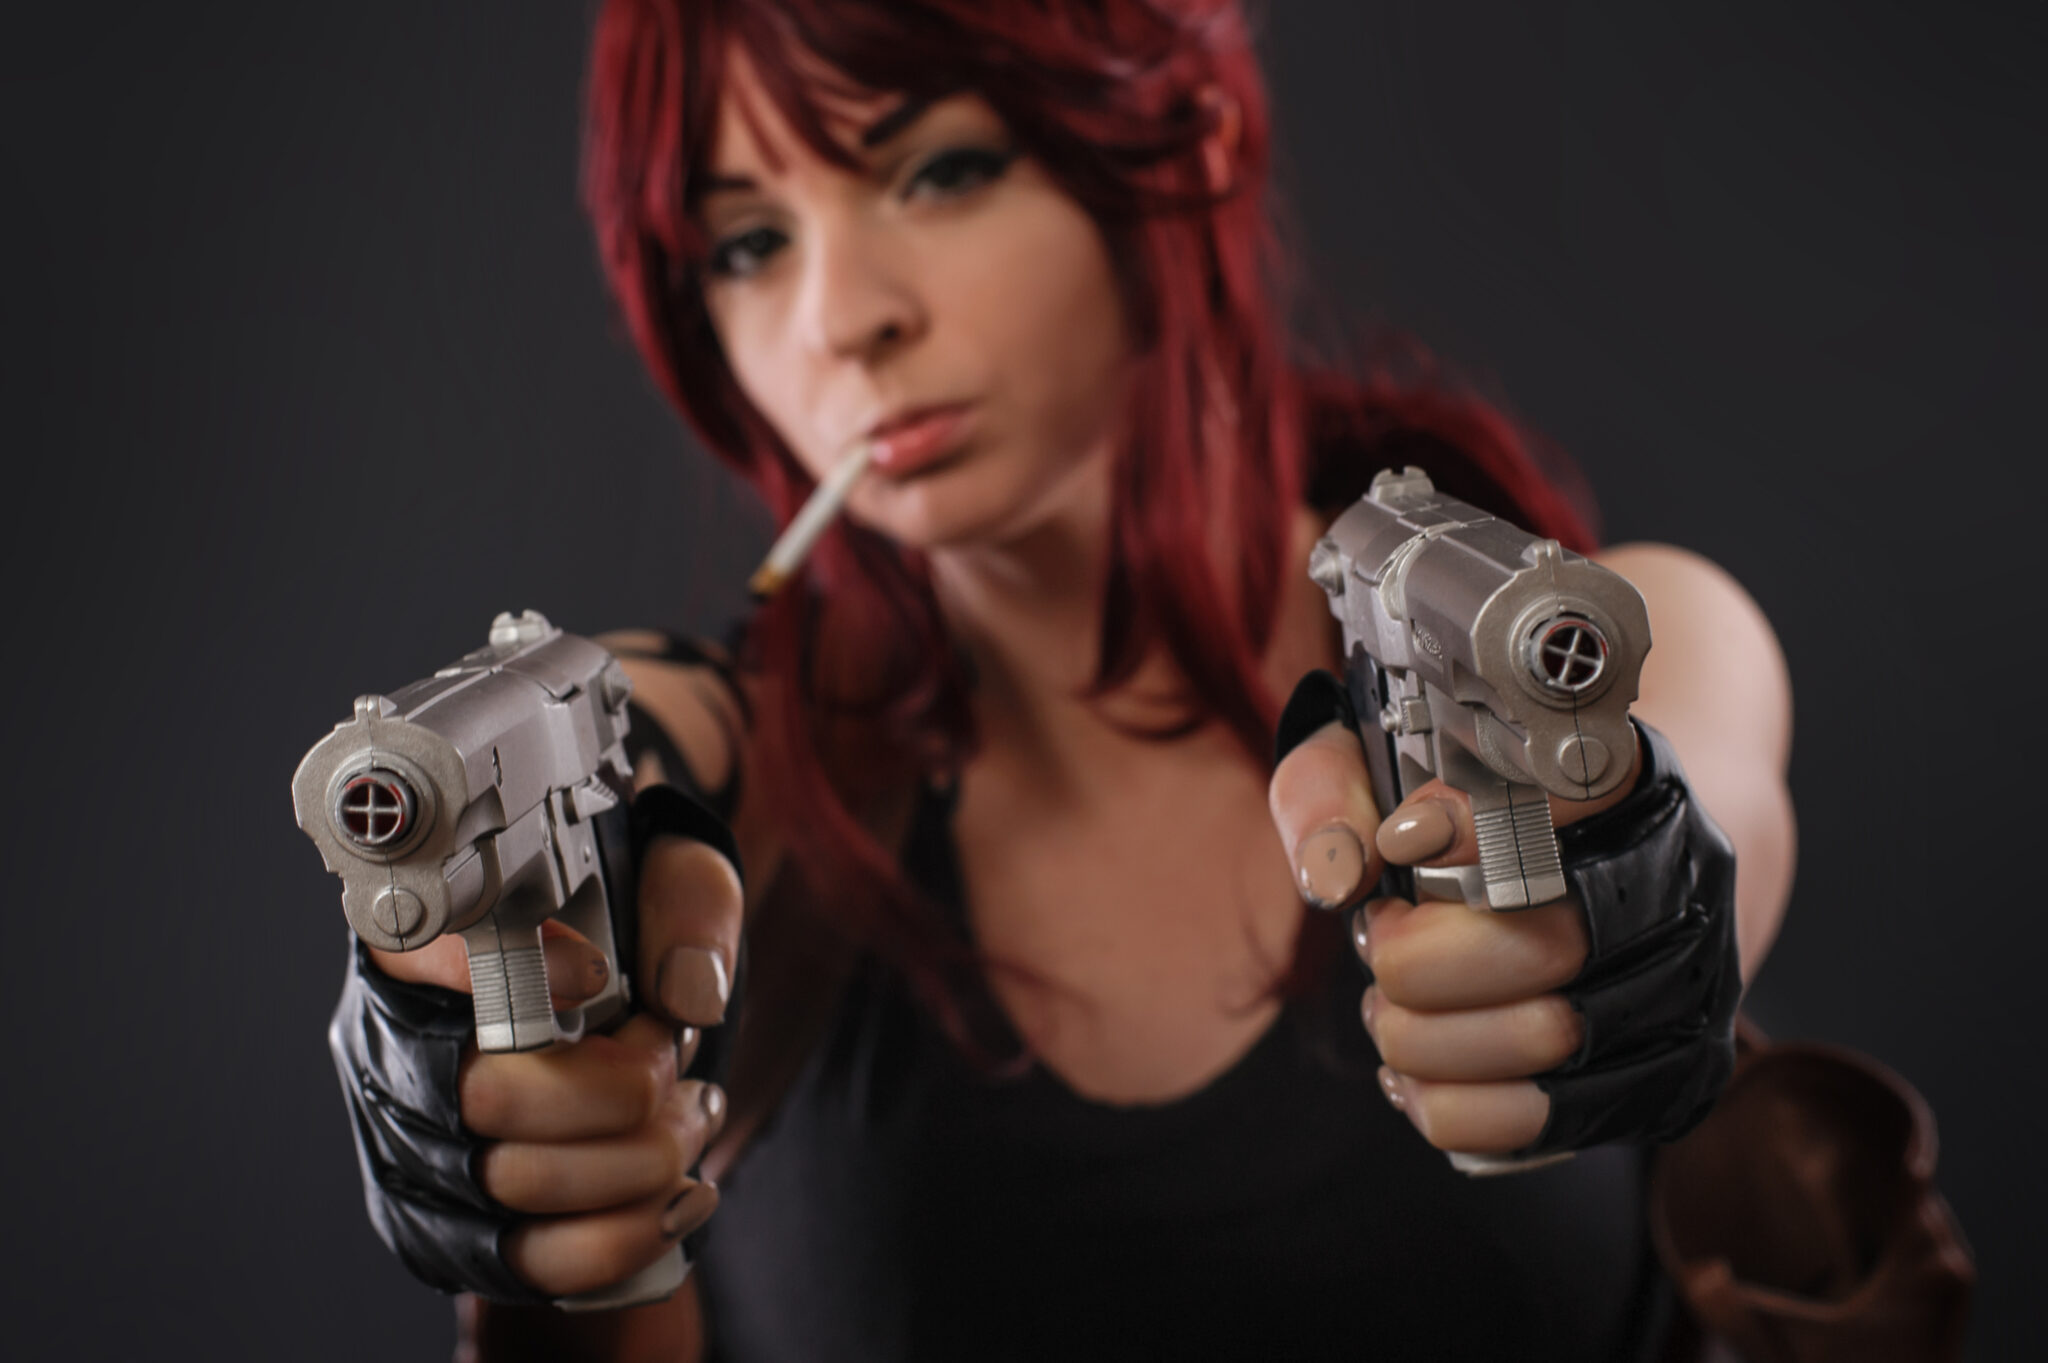 Ii guns. Как зовут персонажа на фото девушка с двумя пистолетами.